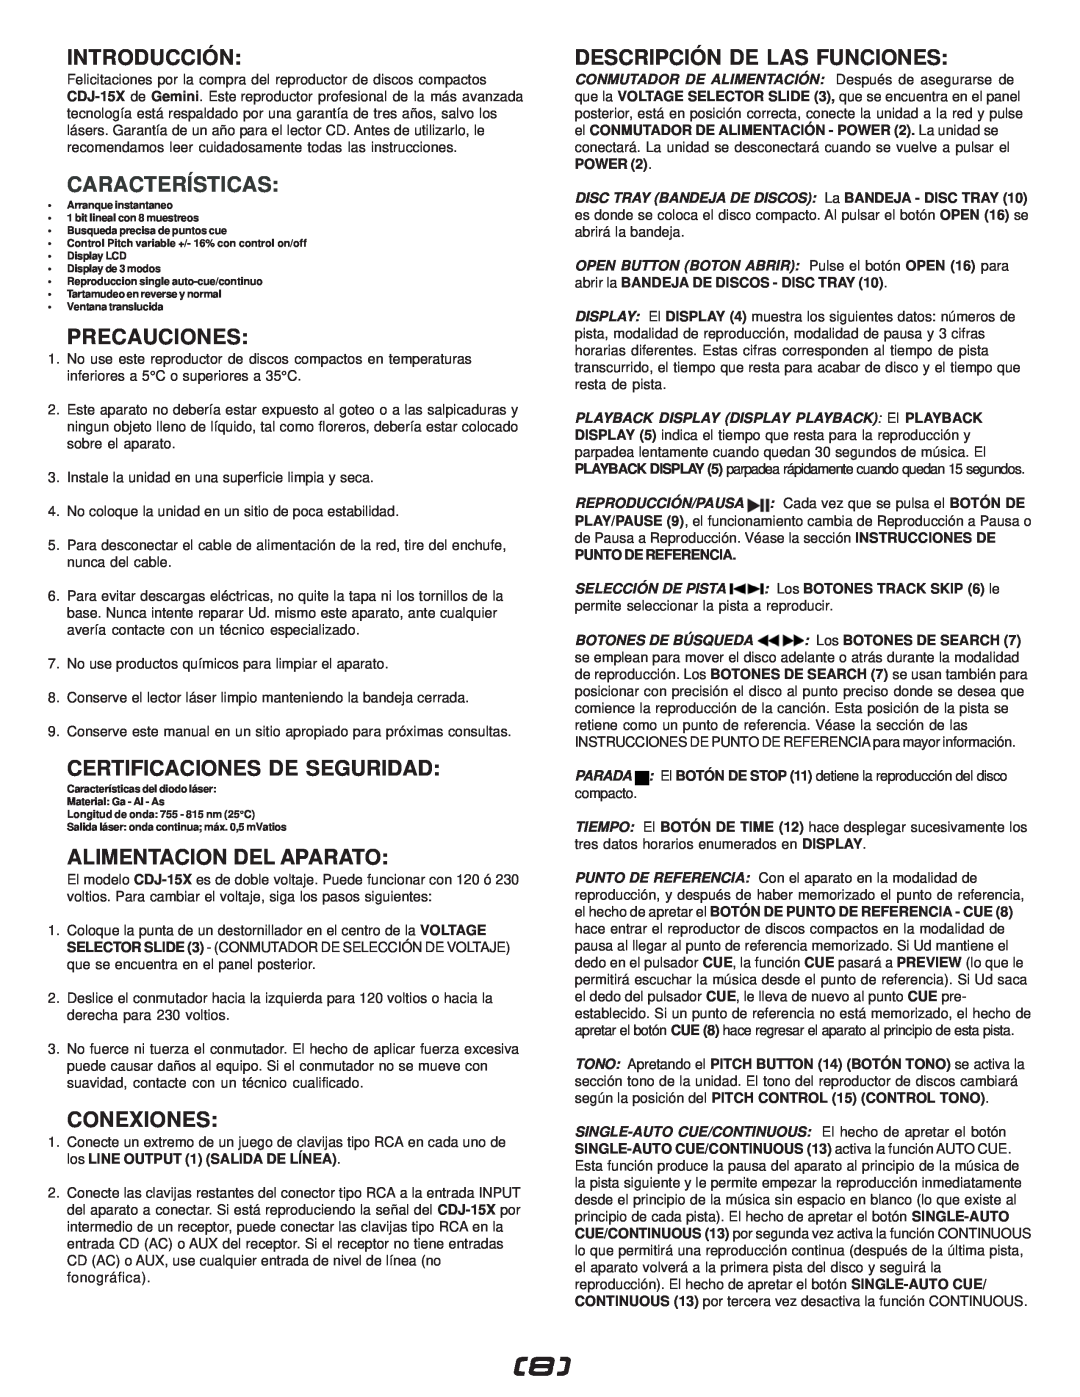 Gemini CDJ-15X manual Introducción, Características, Precauciones, Certificaciones De Seguridad, Alimentacion Del Aparato 